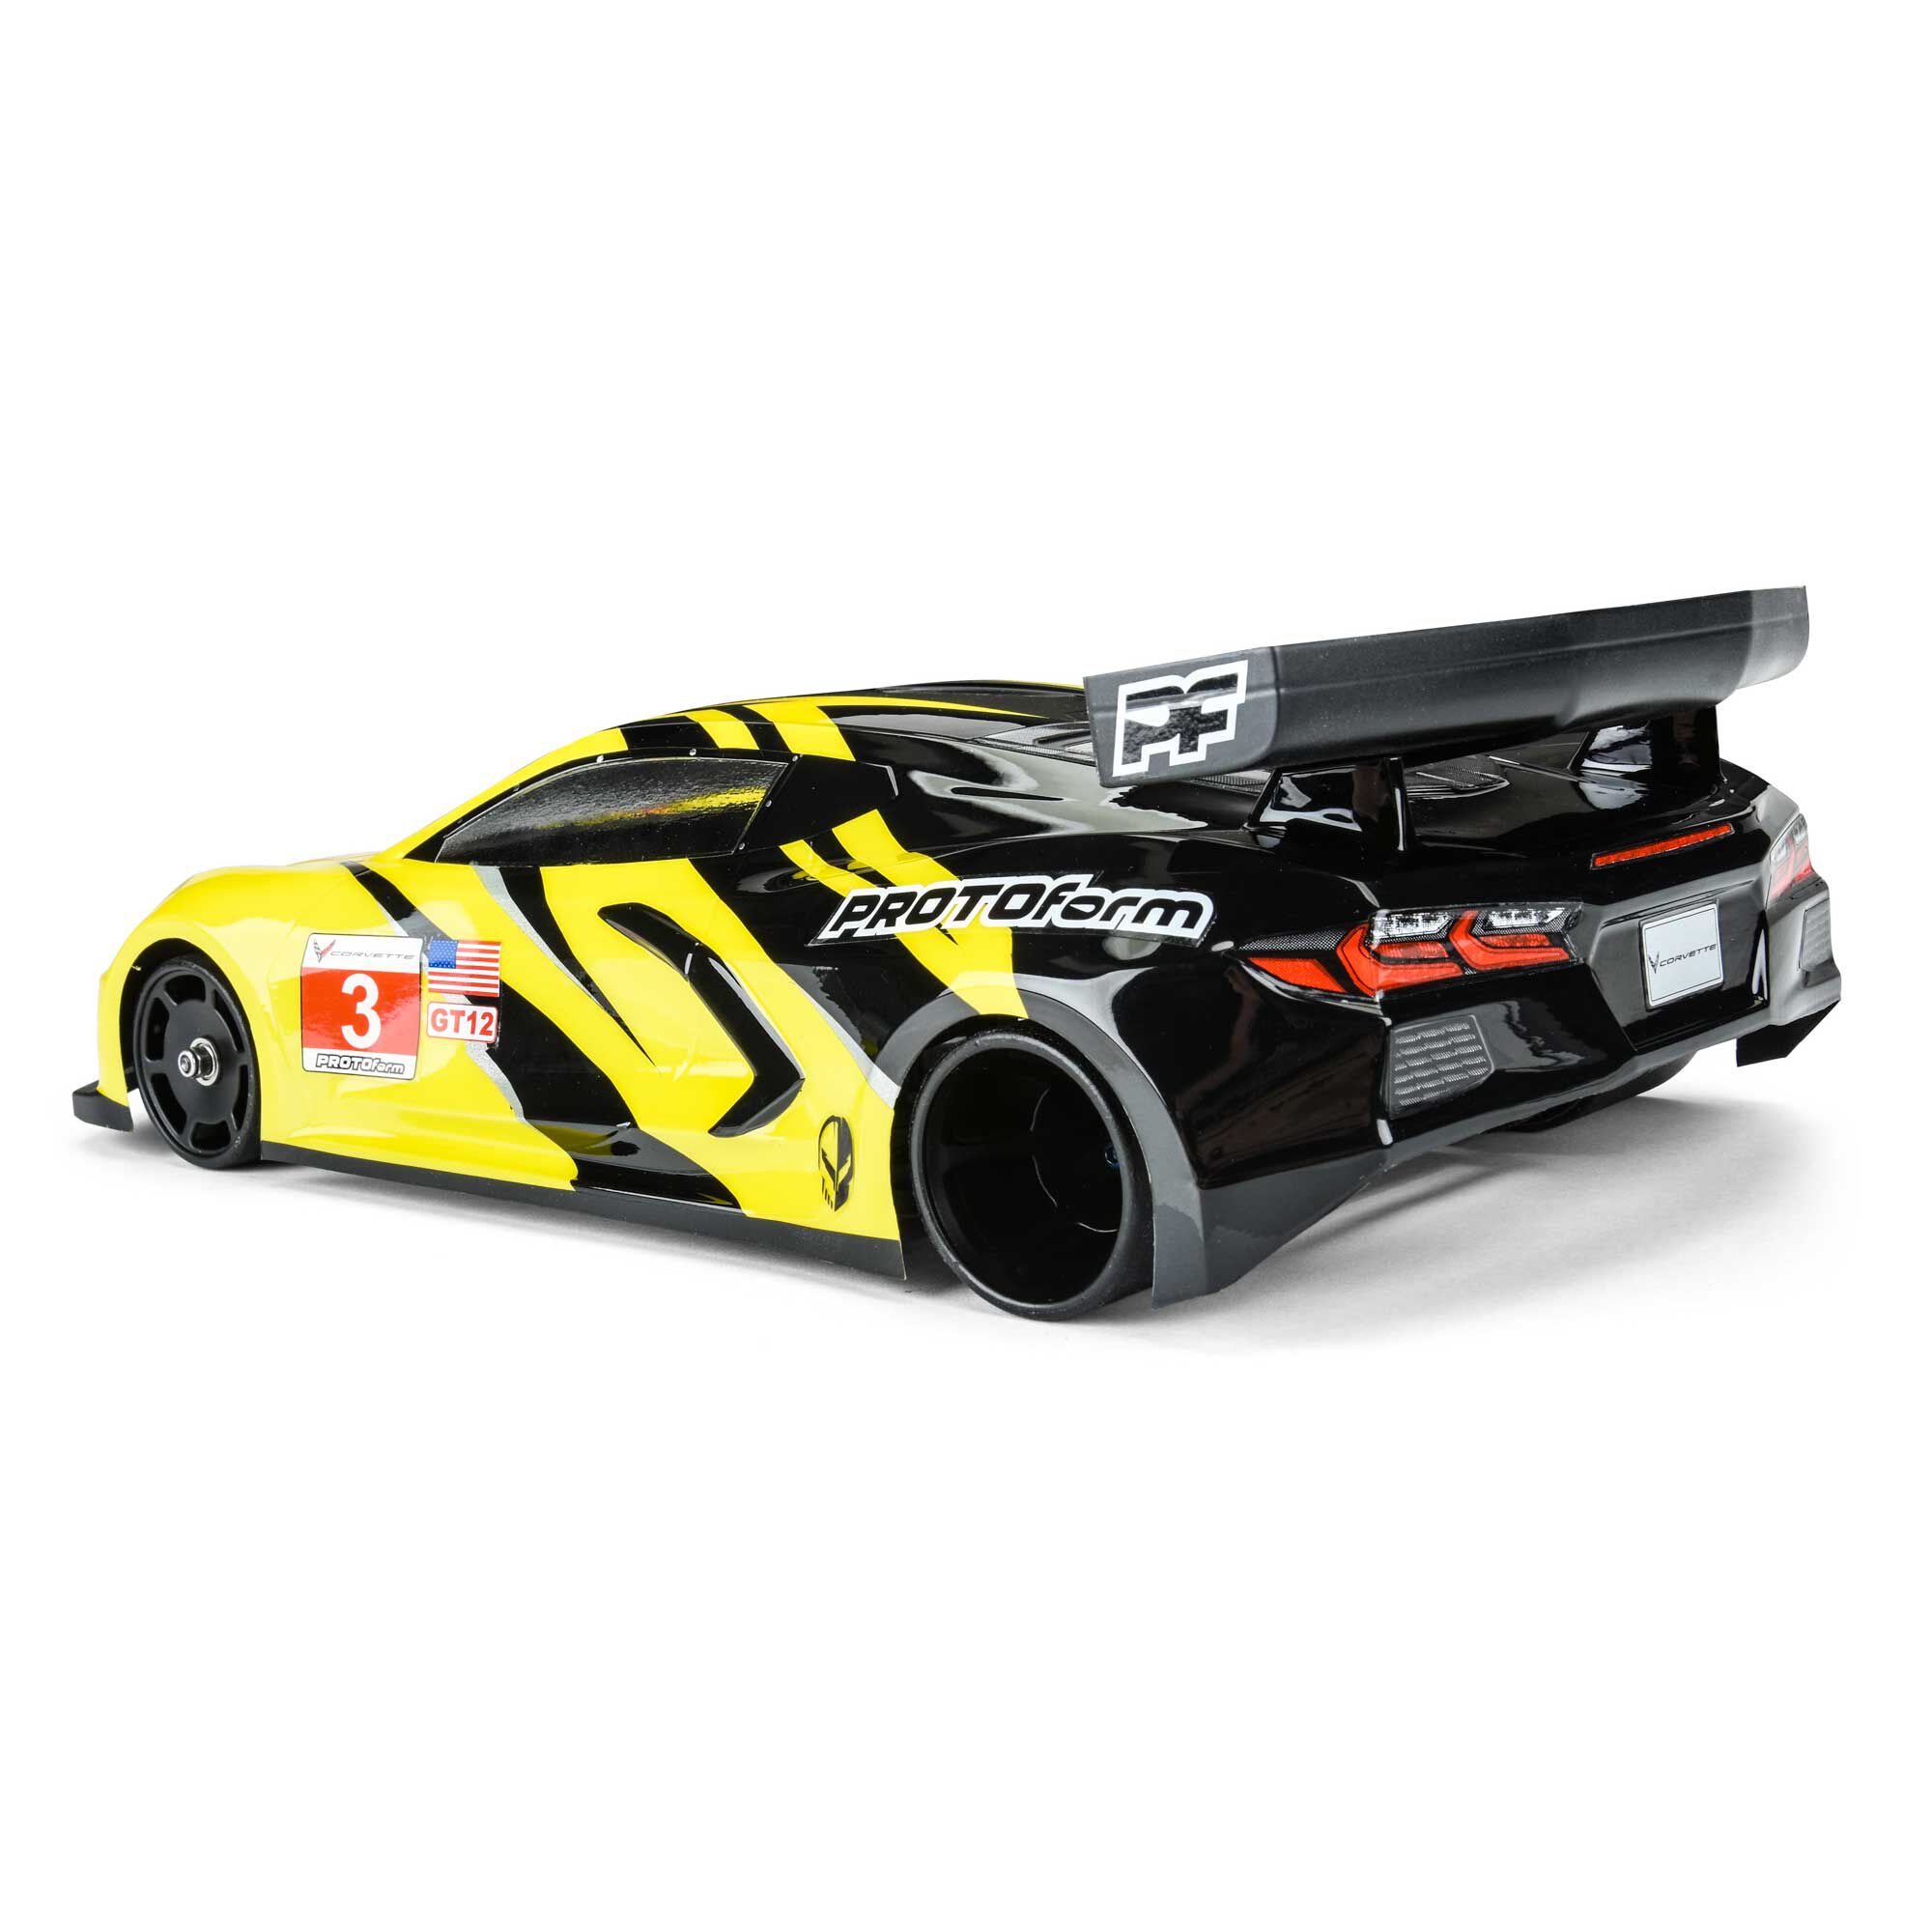 Pro-line Racing 1/12 Chevrolet Corvette C8 Clear Body GT12 PRM157520 Protoform